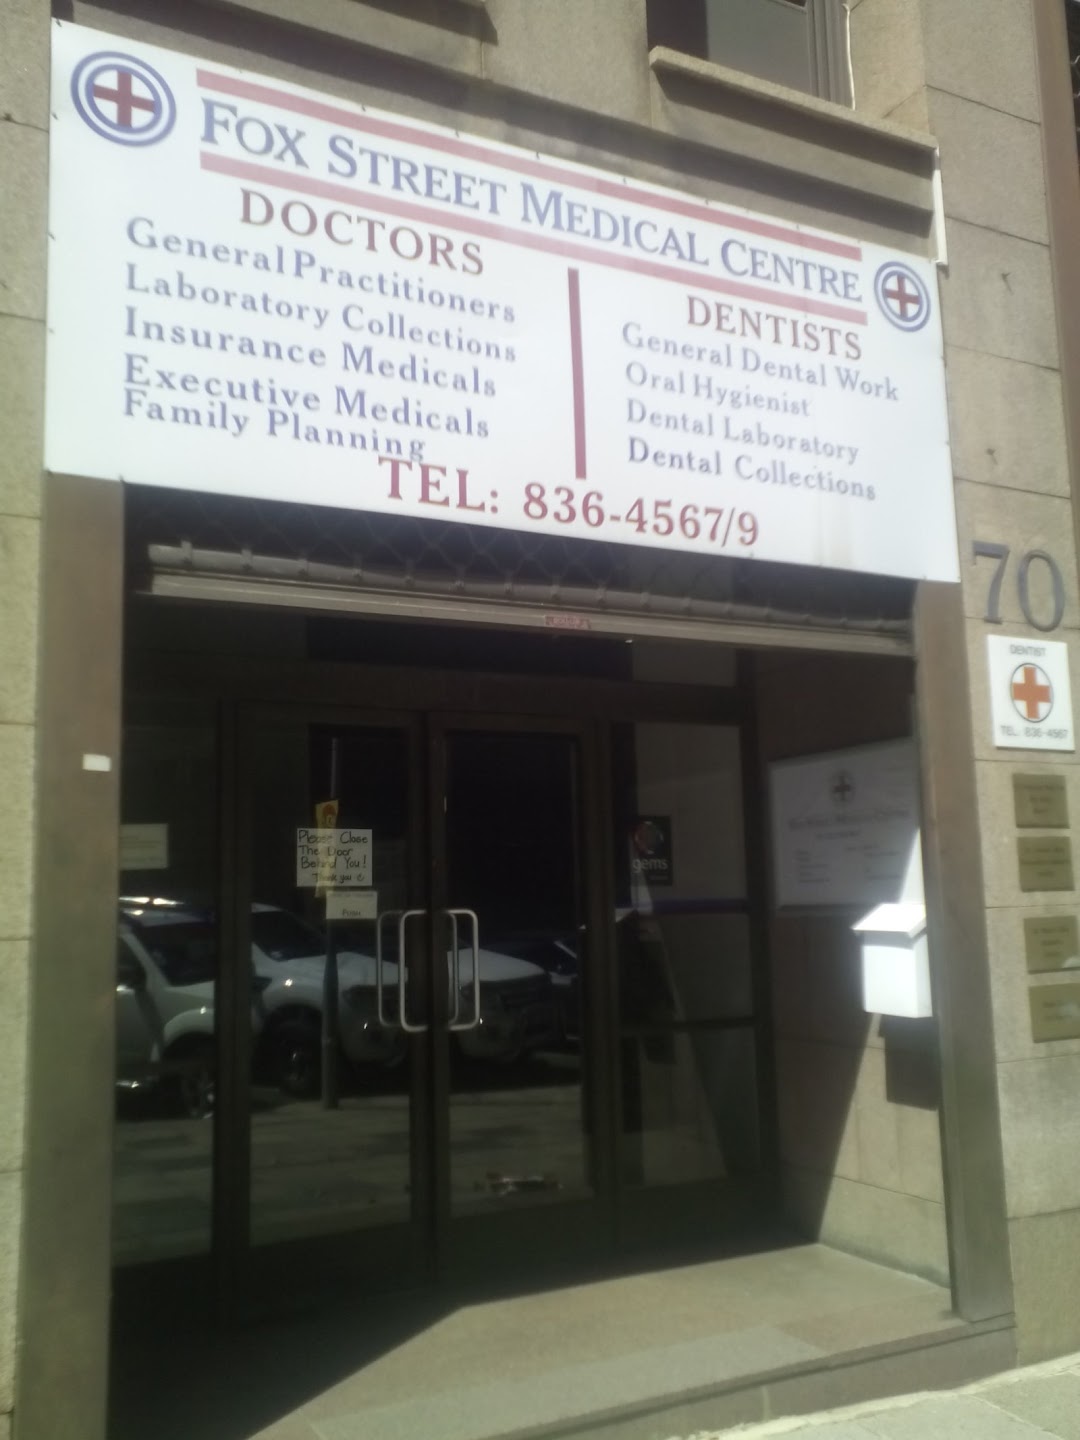 Fox Street Medical Centre - Dr.J van der Spuy